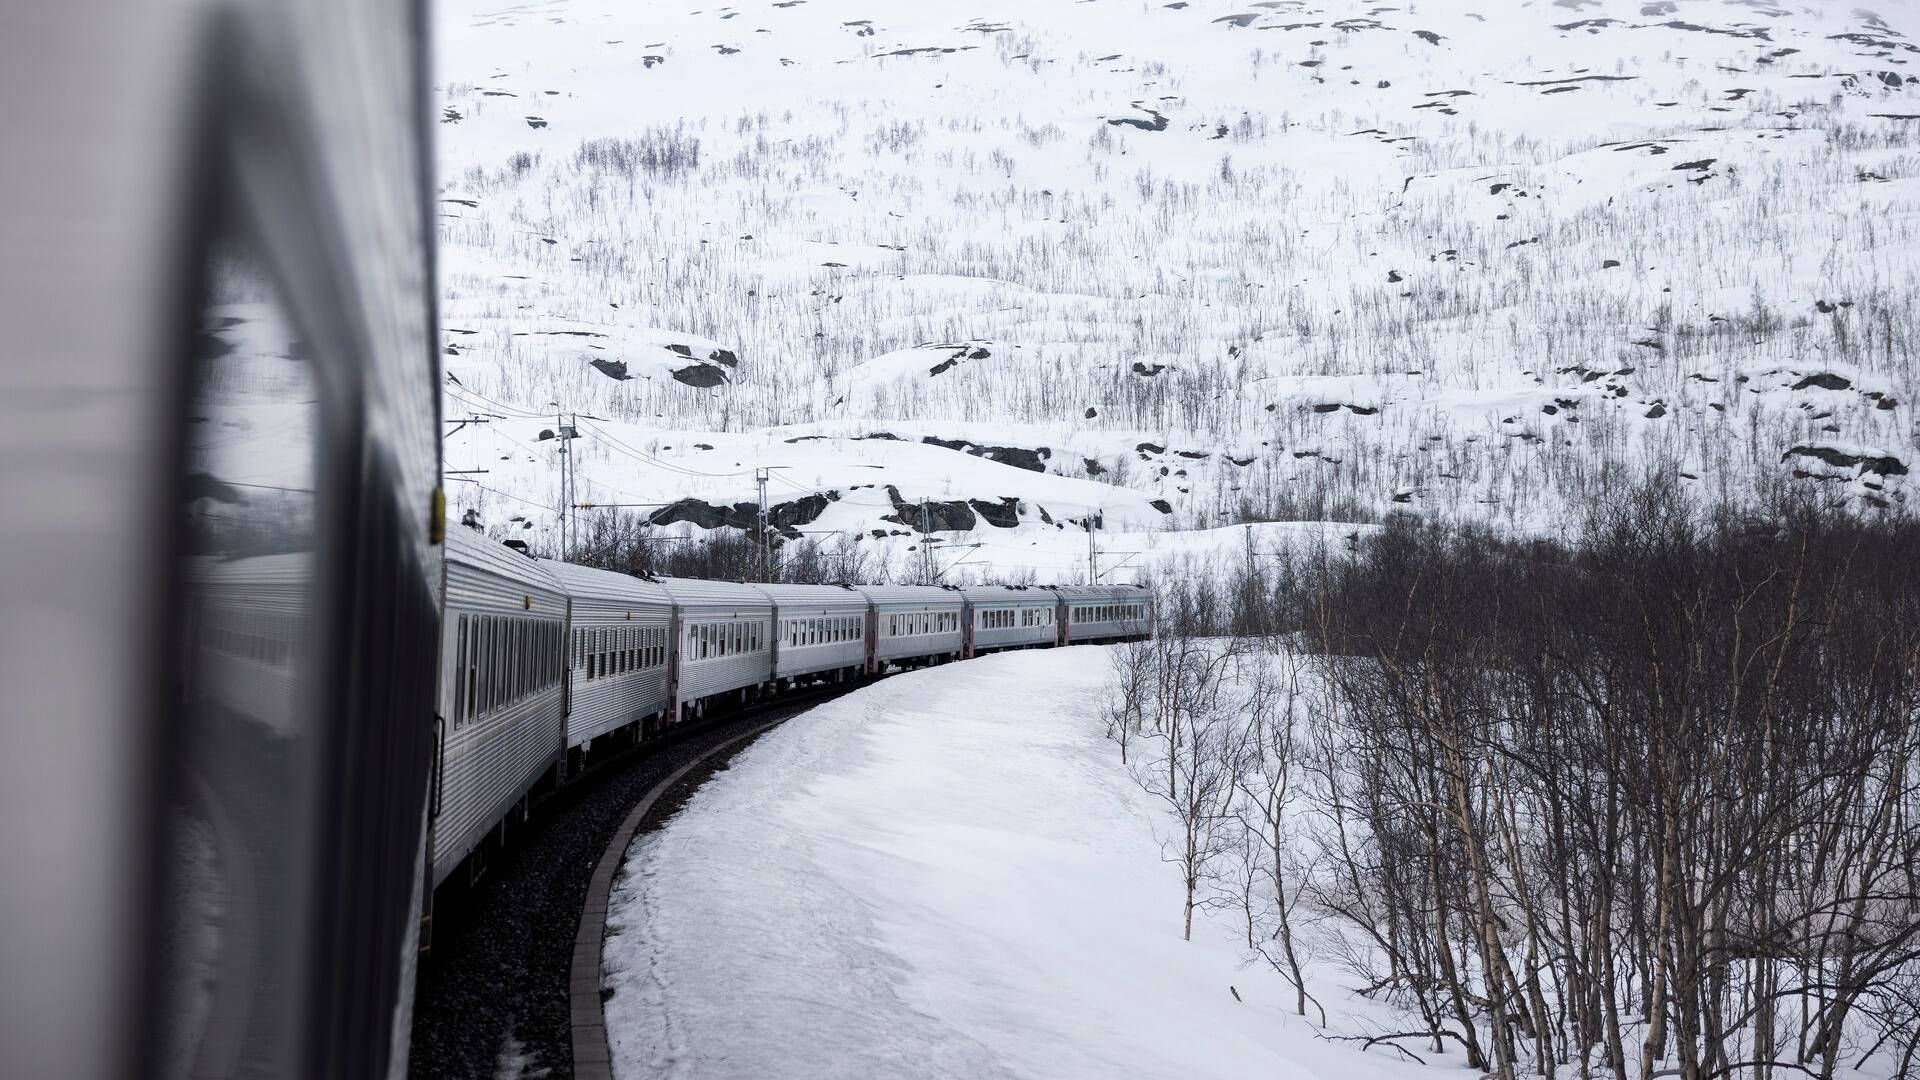 Størstedelen af beløbet skal dog gå til udbygningen af veje, selvom den norske jernbane også vil få en andel. | Foto: Thomas Borberg/Ritzau Scanpix